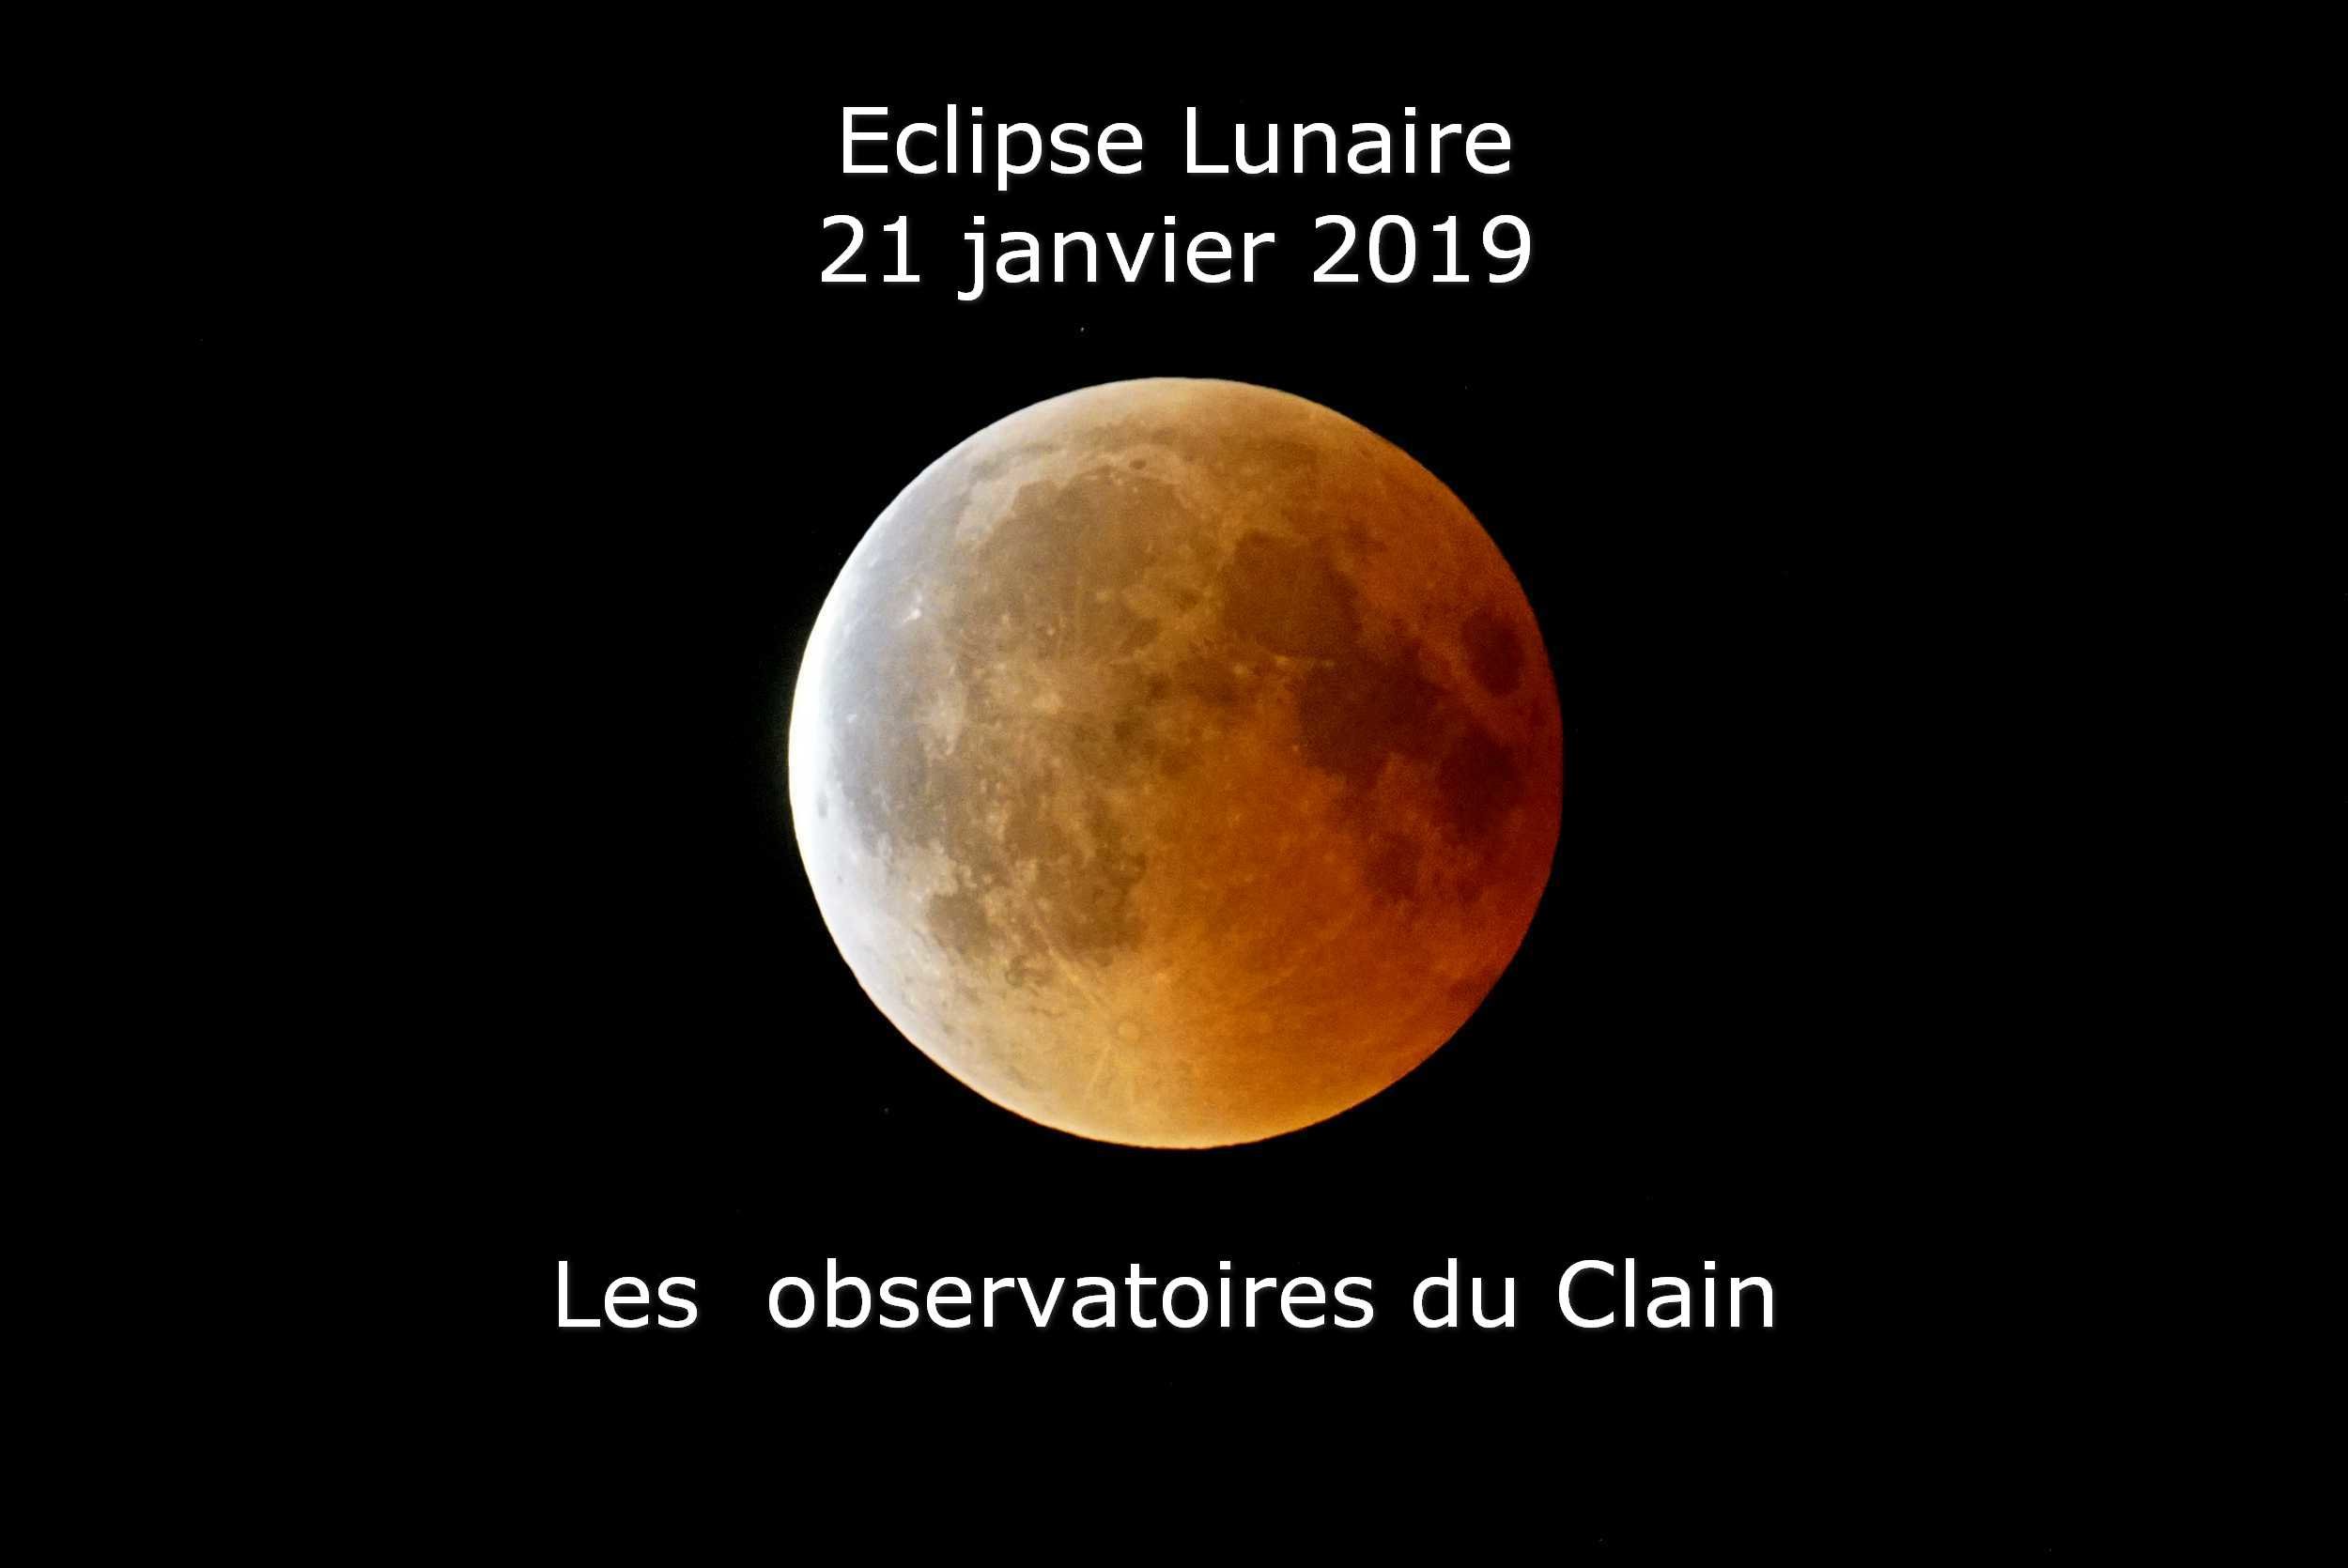 Eclipse Lunaire, 21 janvier, Obs du Clain